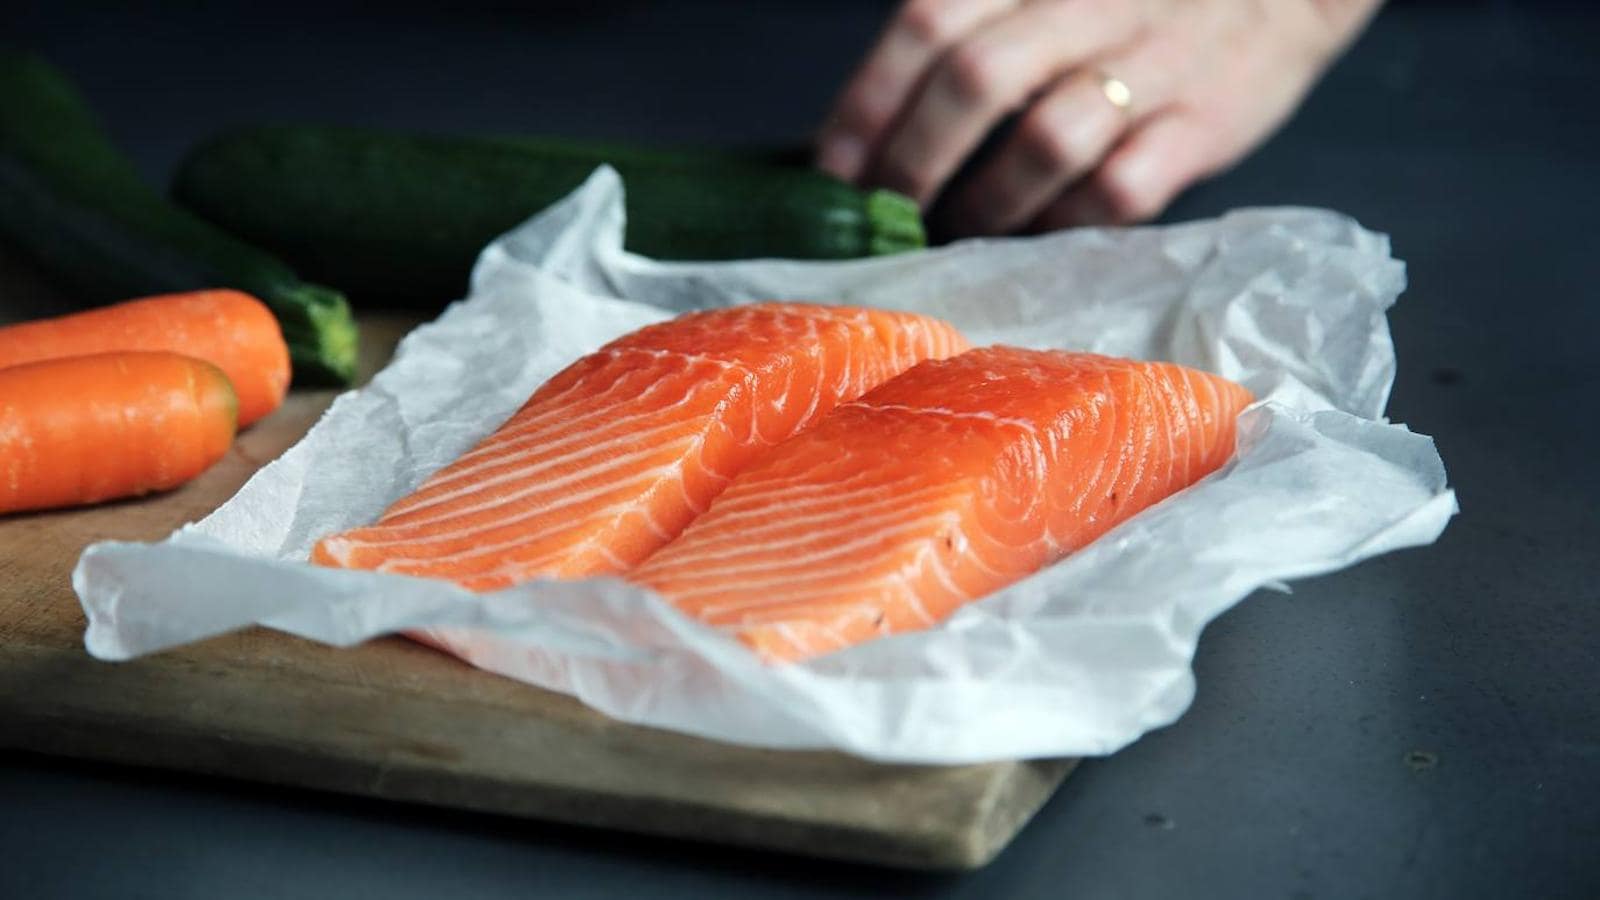 Salmón. El <a href="https://www.abc.es/bienestar/alimentacion/abci-salmon-alimentos-mas-saludables-para-anadir-dieta-201910031317_noticia.html" target="_blank">salmón</a> es uno de los primeros alimentos que nos vienen a la cabeza si pensamos en la vitamina D. Con 8 microgramos por cada 100 gramos según la Bedca, este pescado azul siempre es una delicia en nuestros platos. Podemos tomarlo simplemente a la plancha, en forma de sushi o poke, o elegir su versión ahumada en <a href="https://www.abc.es/bienestar/alimentacion/recetas-saludables/abci-beneficios-salmon-ahumado-y-tres-recetas-ligeras-201912230124_noticia.html" target="_blank">una de estas tres recetas. </a>